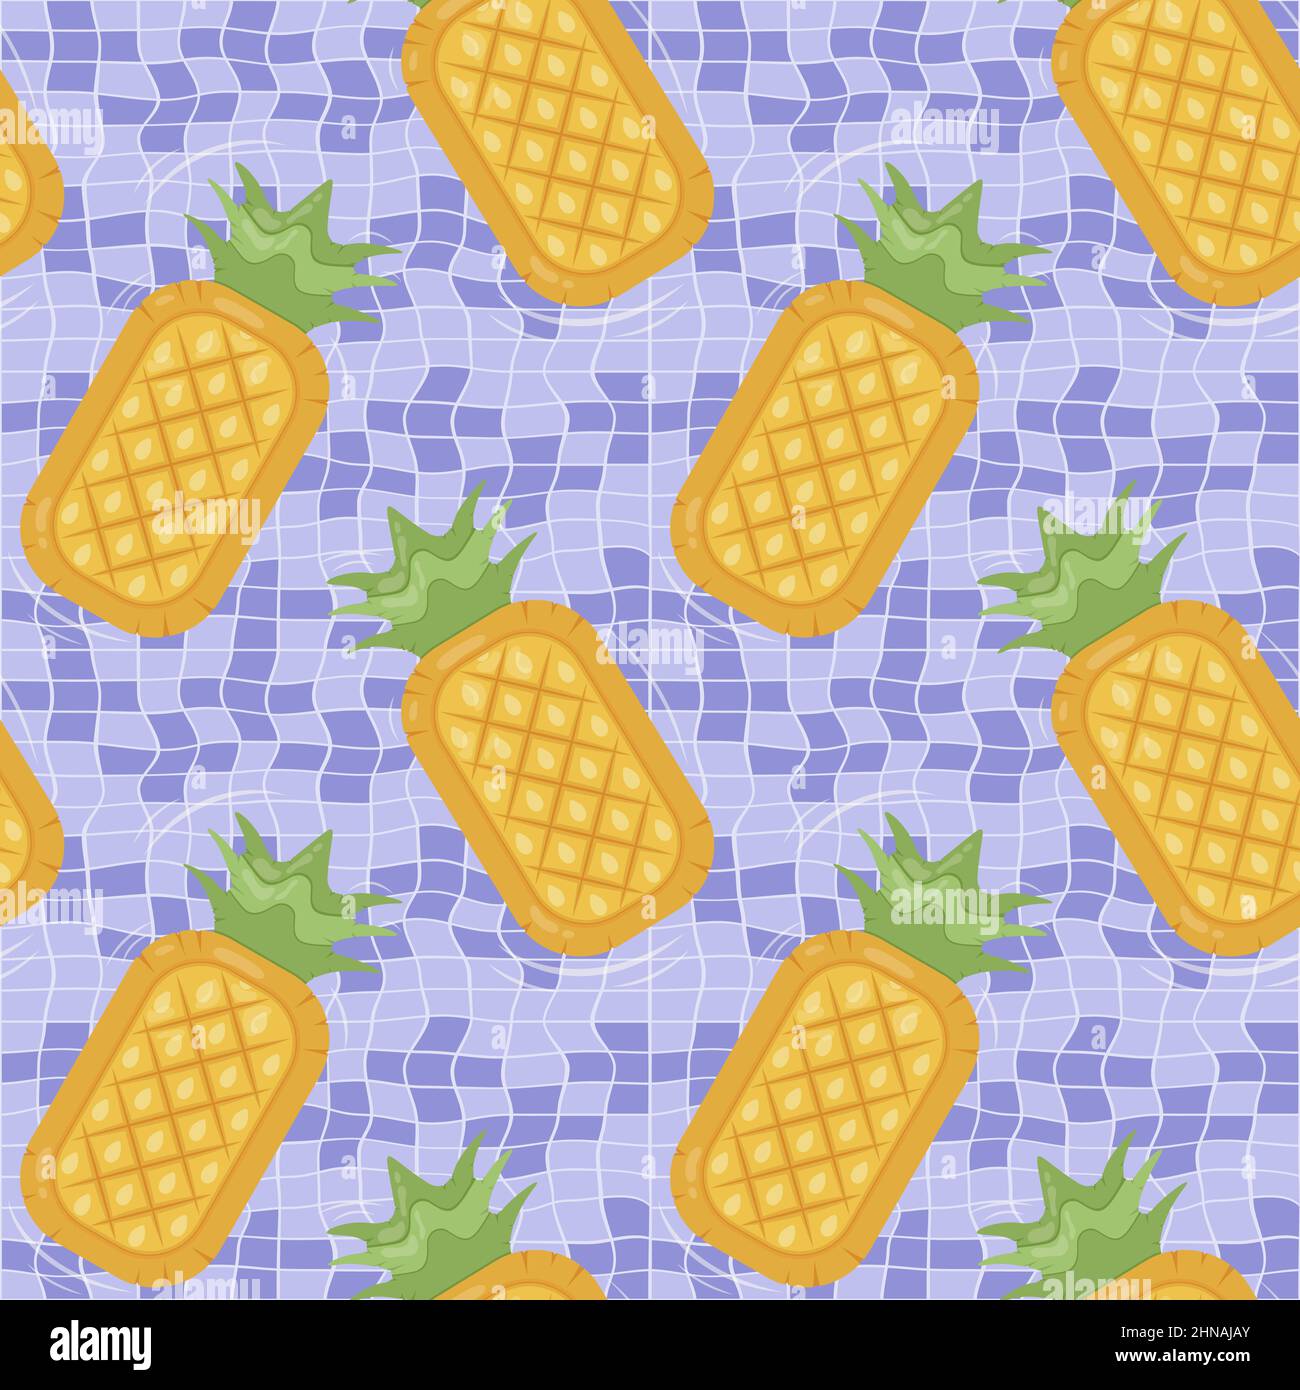 Nahtloses Muster mit ananasförmigen aufblasbaren Matratzen für Poolparty, Stoffhintergrund und Banner Stock Vektor